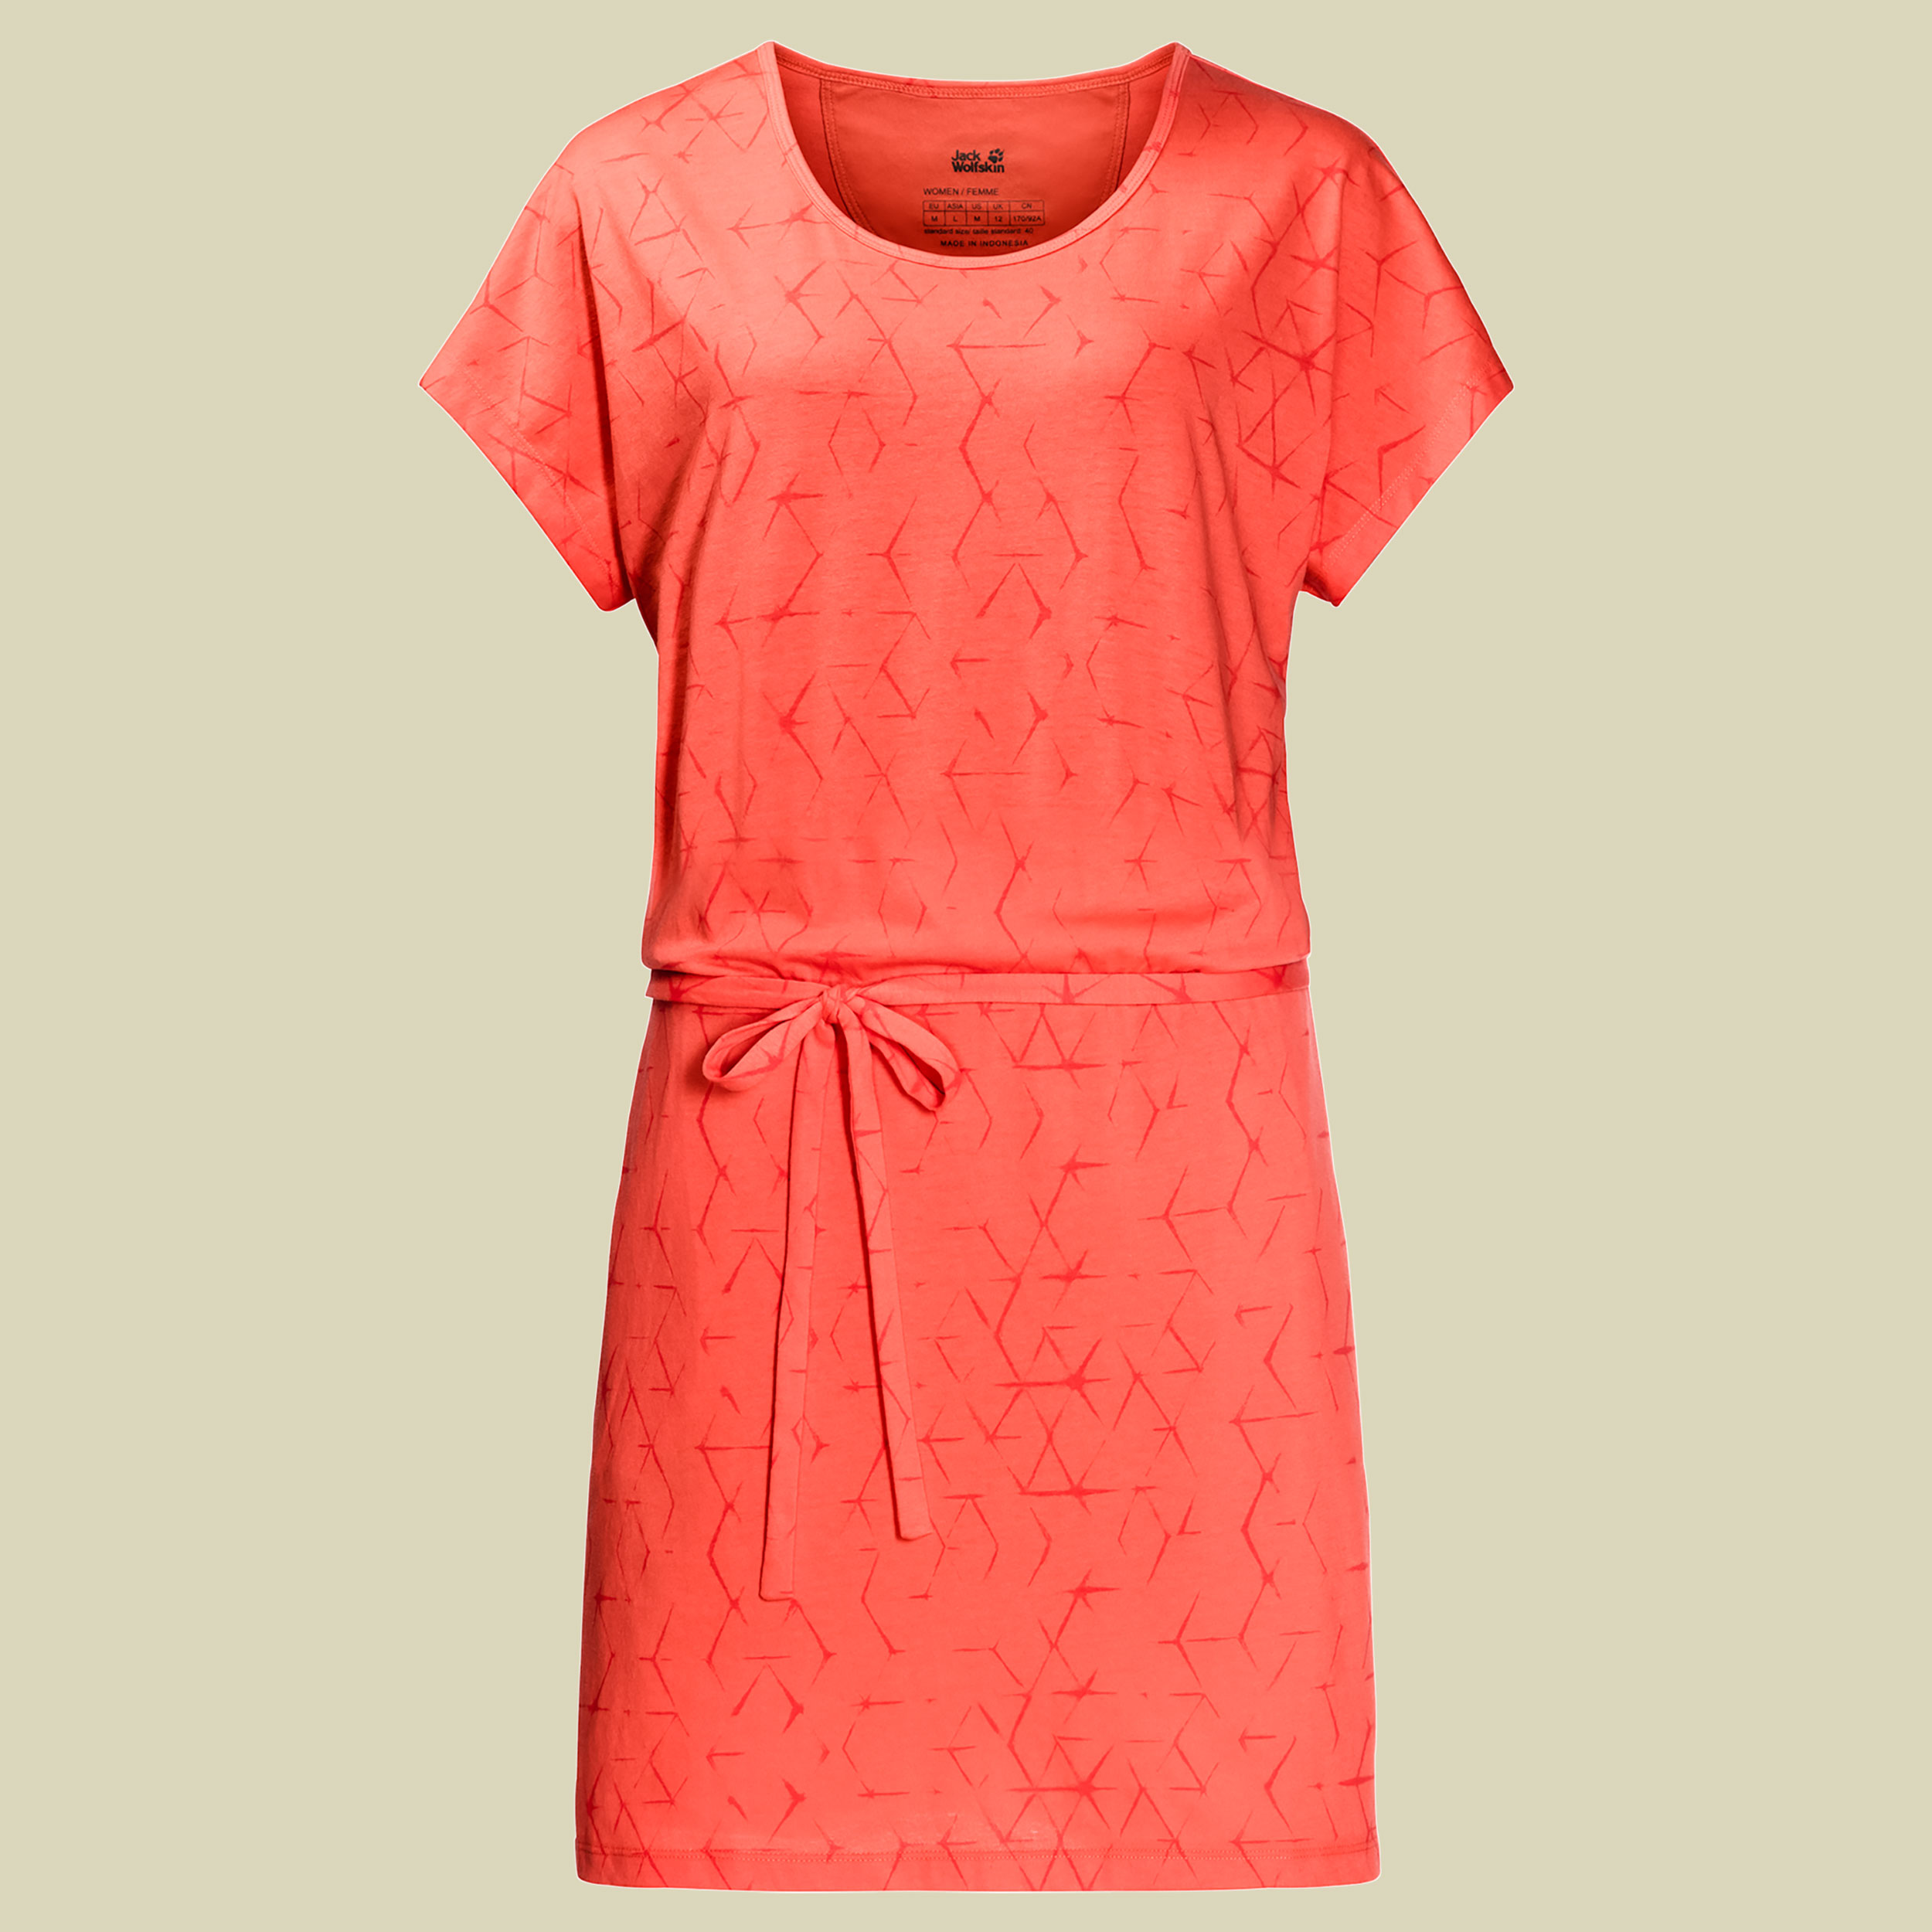 Shibori Dress Women Größe S Farbe hot coral all over